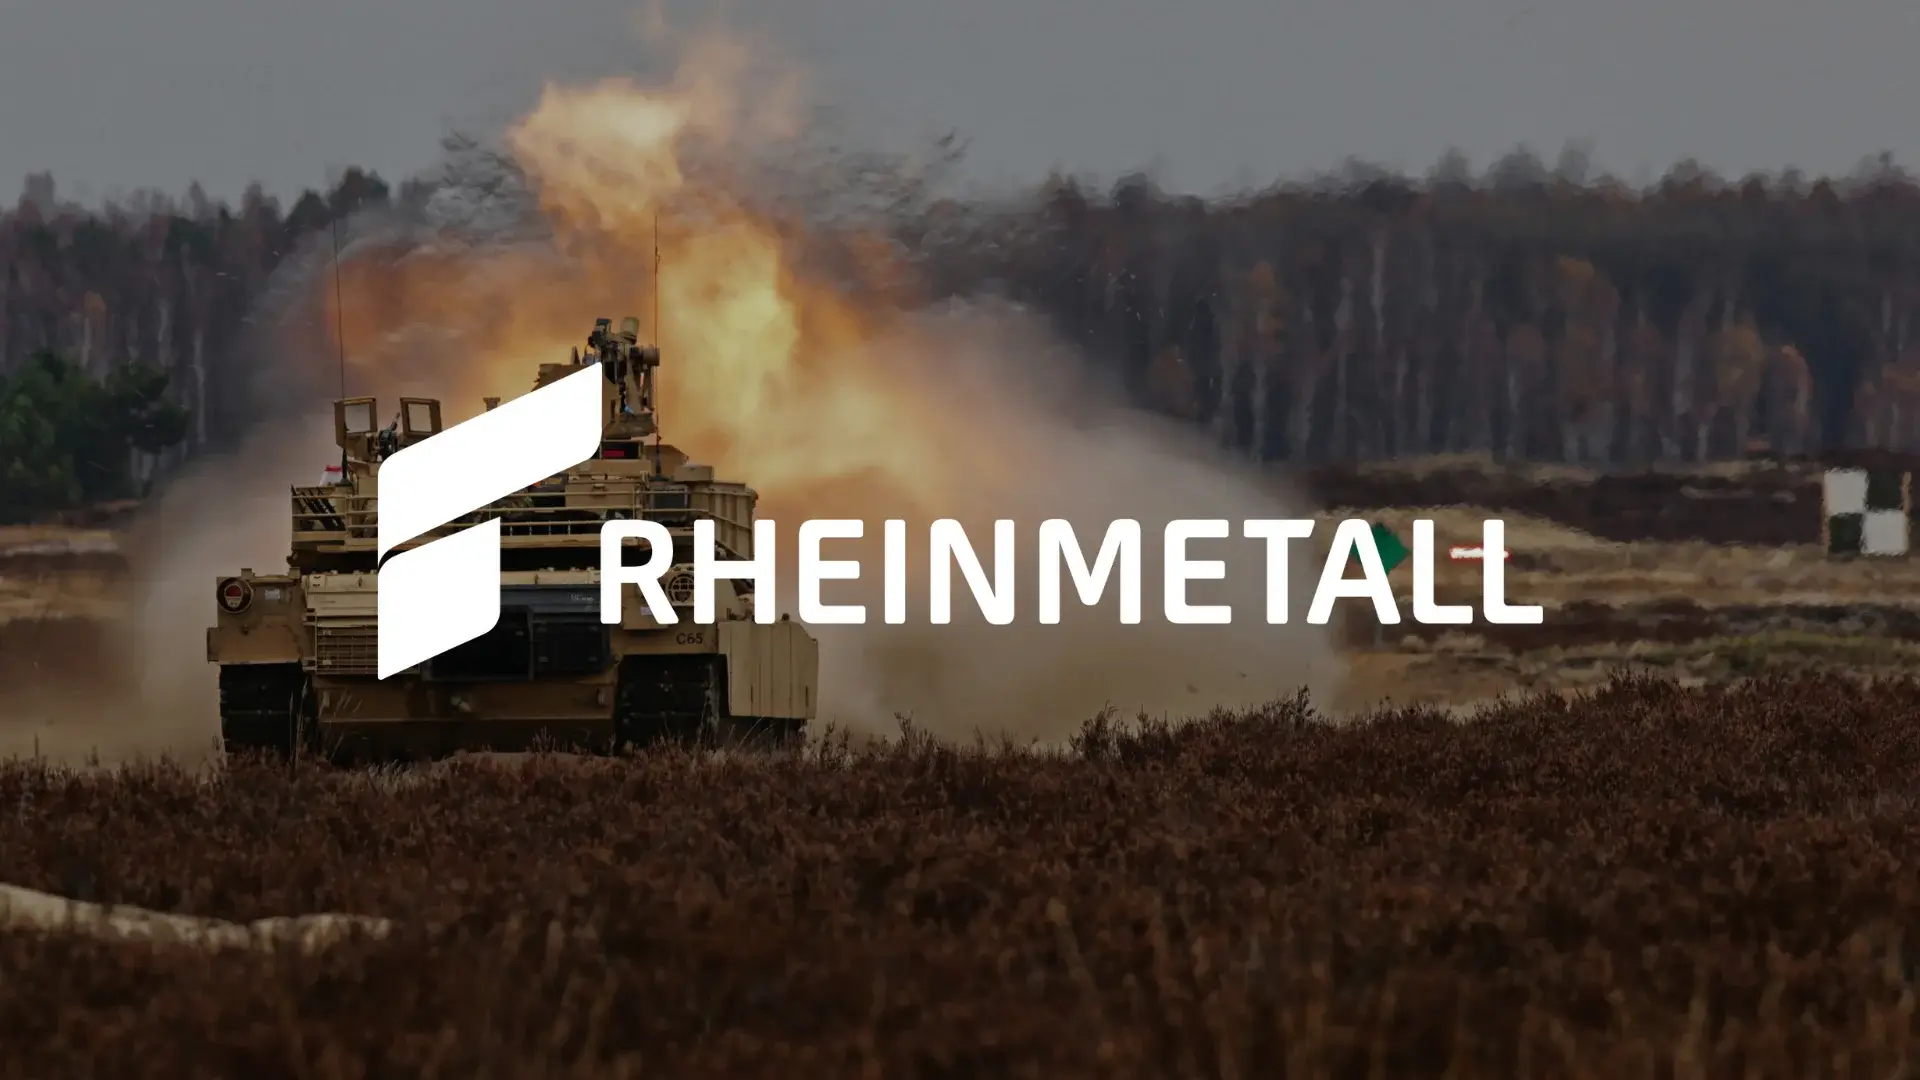 Rheinmetall Aktie Analyse – Profitieren von der Aufrüstung Europas?